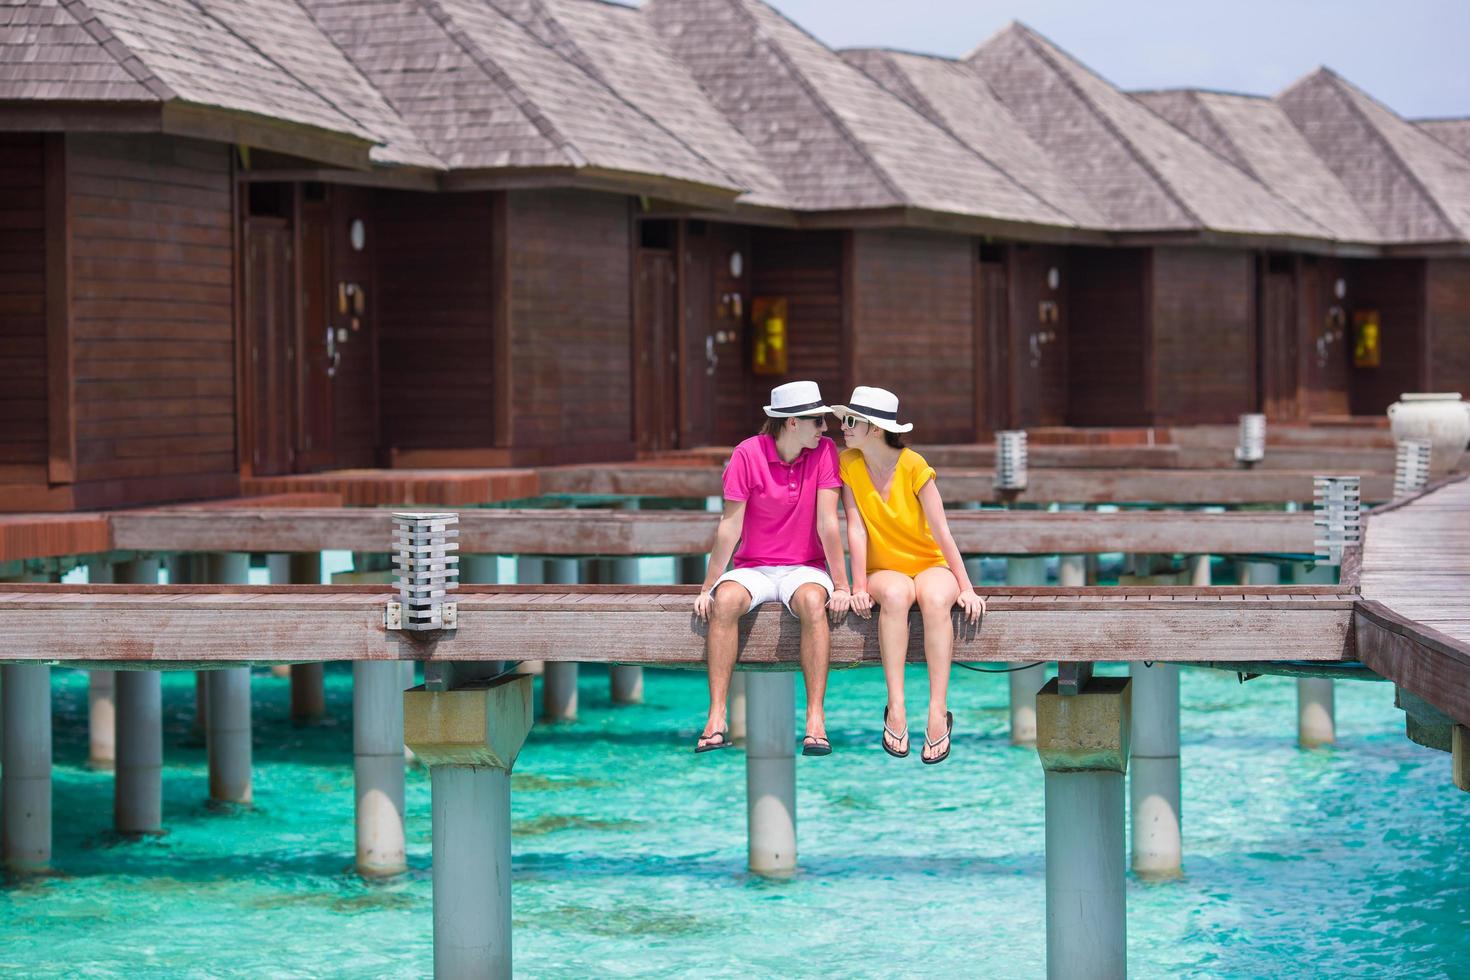 maldive, asia meridionale, 2020 - giovane coppia su un molo di una spiaggia tropicale vicino a un bungalow sull'acqua foto